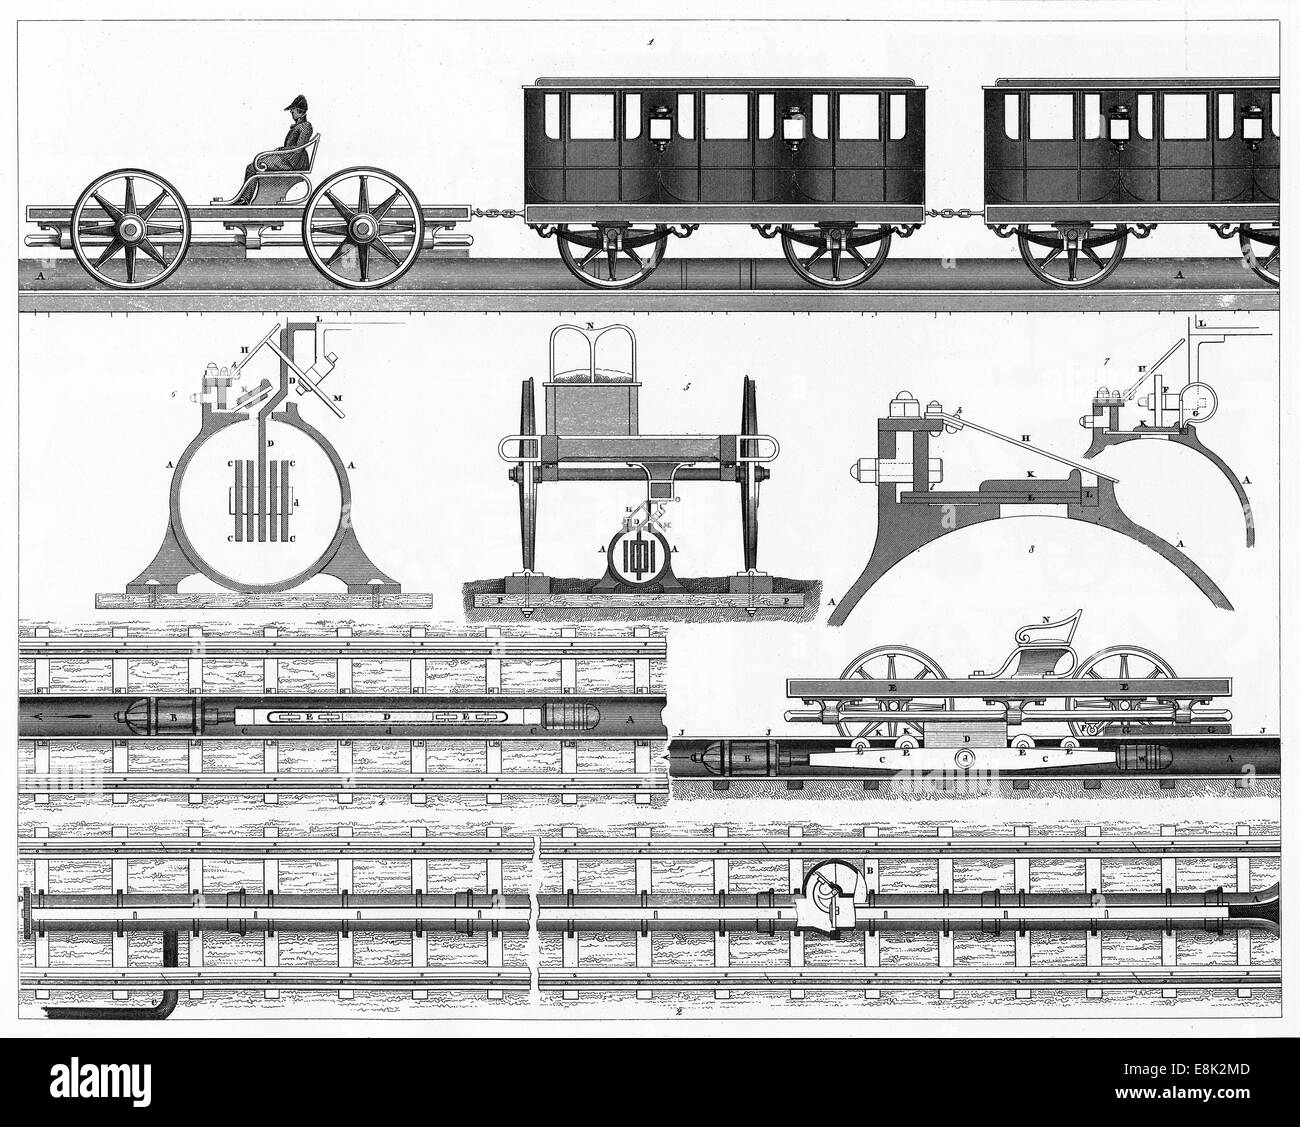 Le illustrazioni incise atmosferica di ferrovie da enciclopedia iconografico della scienza, letteratura e arte, circa 1851. Foto Stock